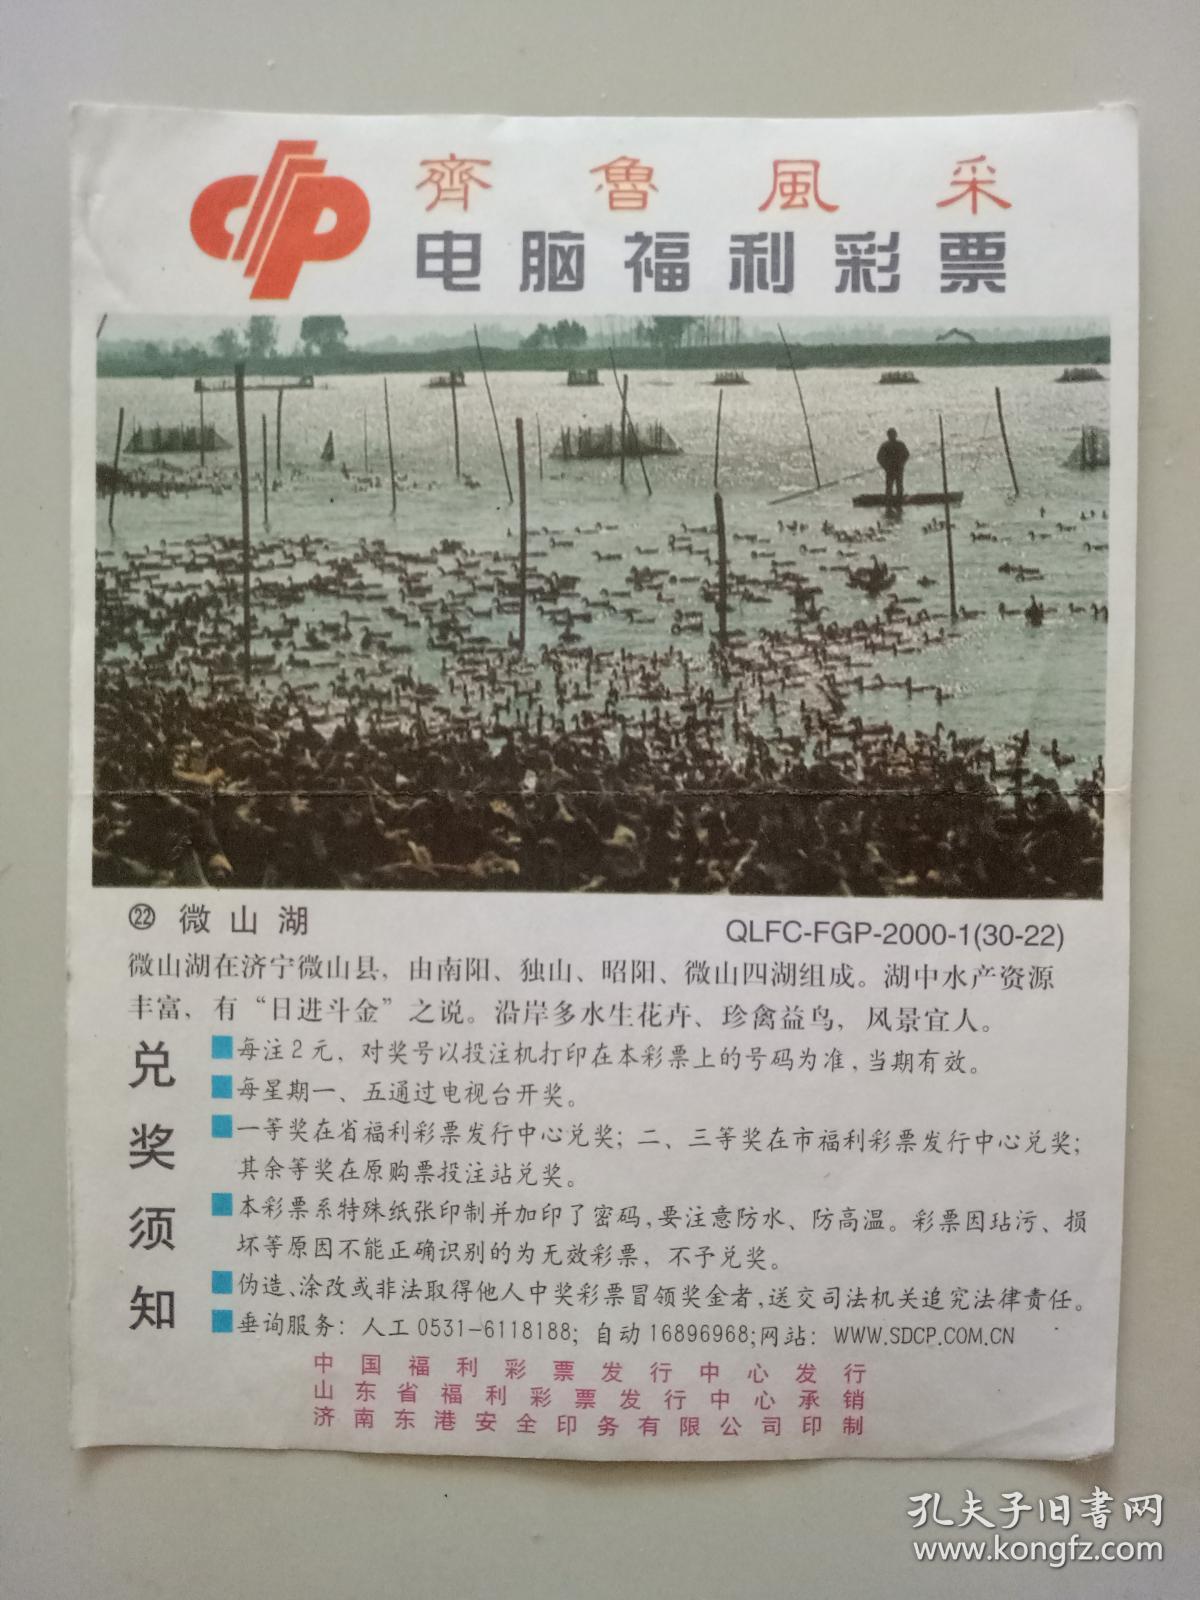 齐鲁风采·福利电脑彩票·微山湖·qlfc-fgp-2000-1【30-22】